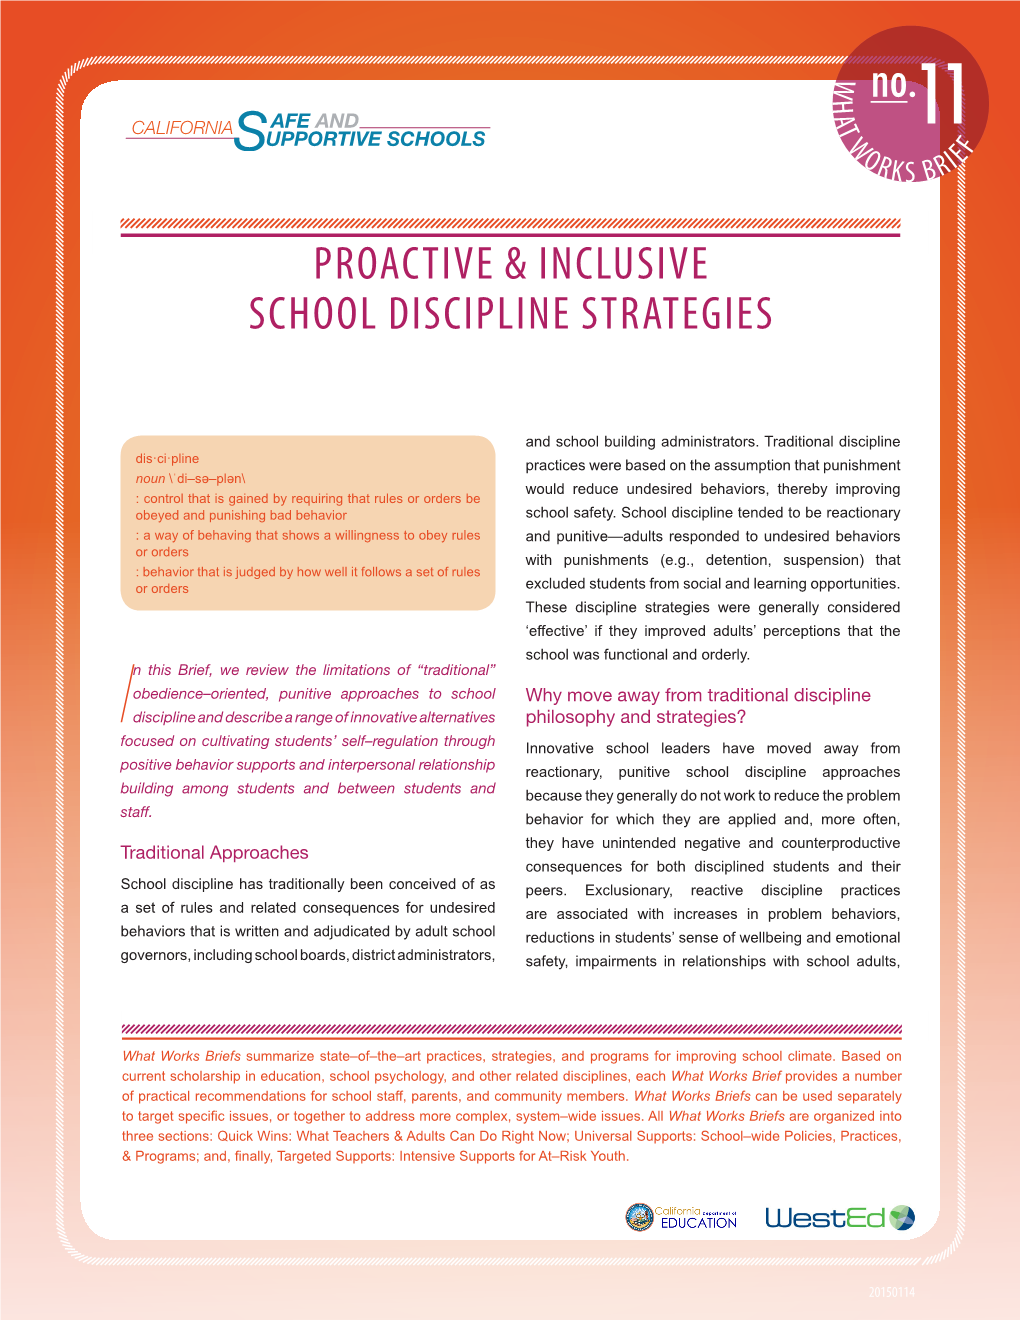 Proactive & Inclusive School Discipline Strategies